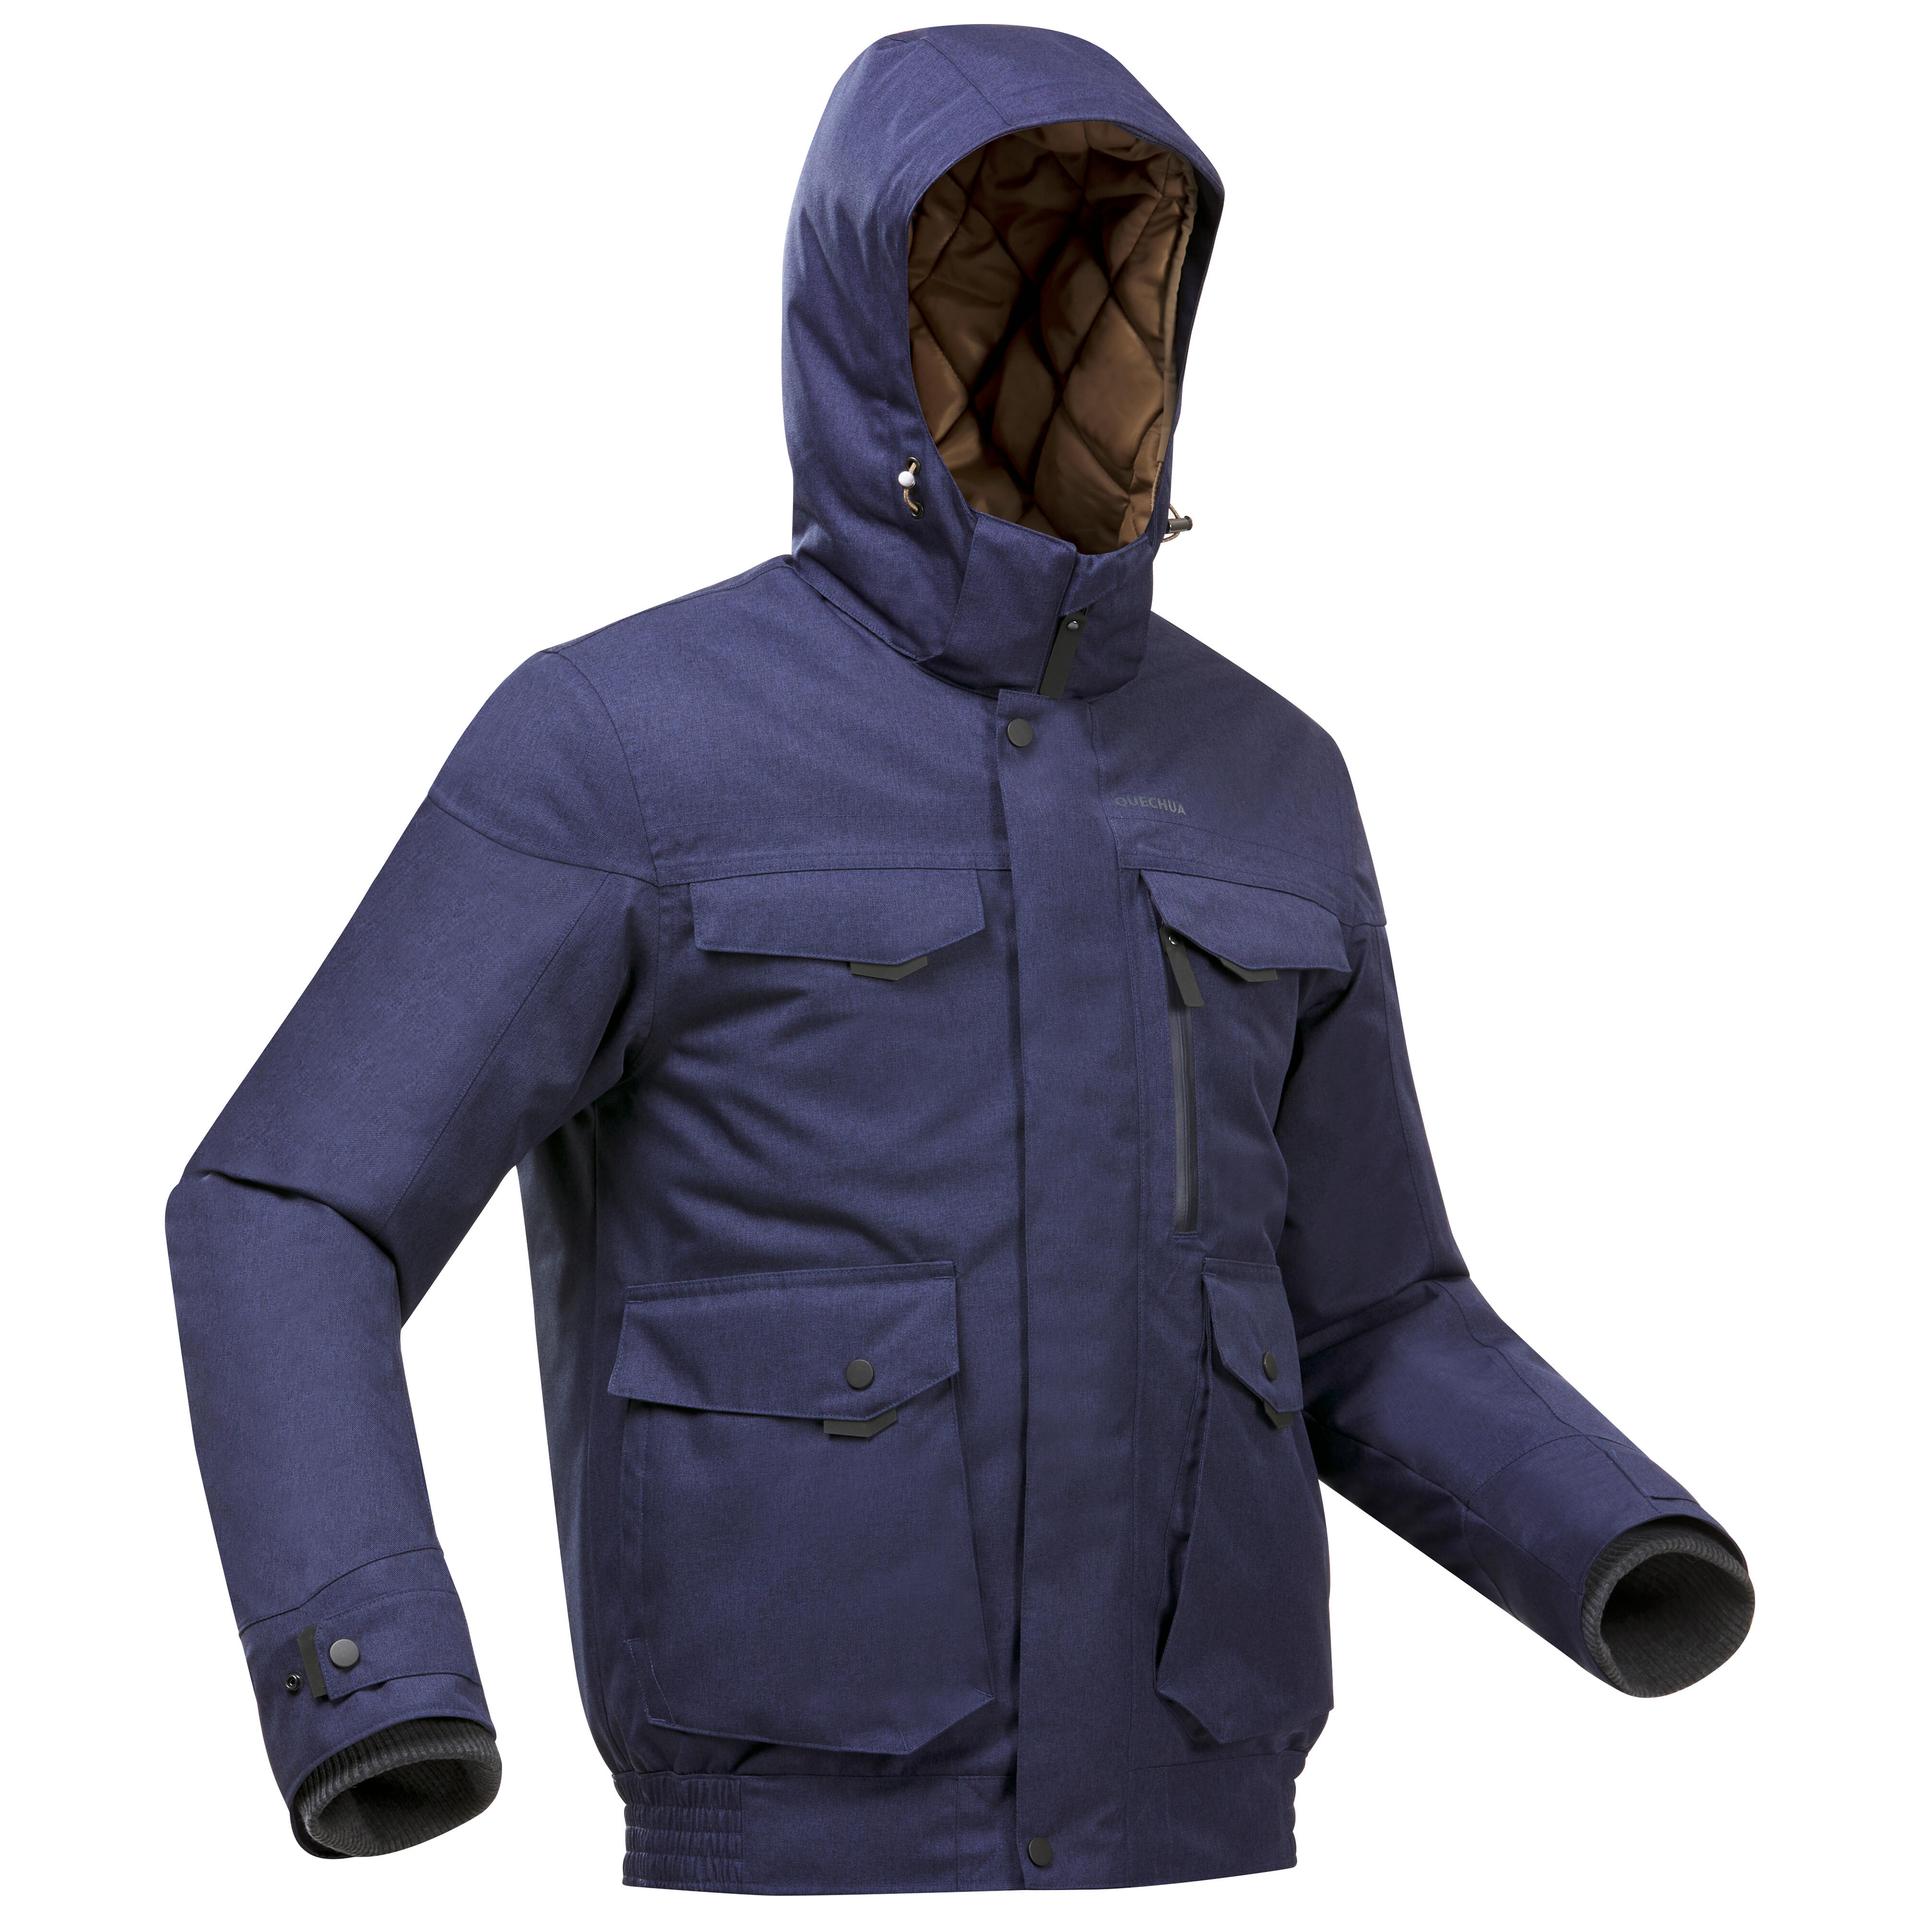 men's waterproof winter hiking jacket sh100 x-warm -10°c blue